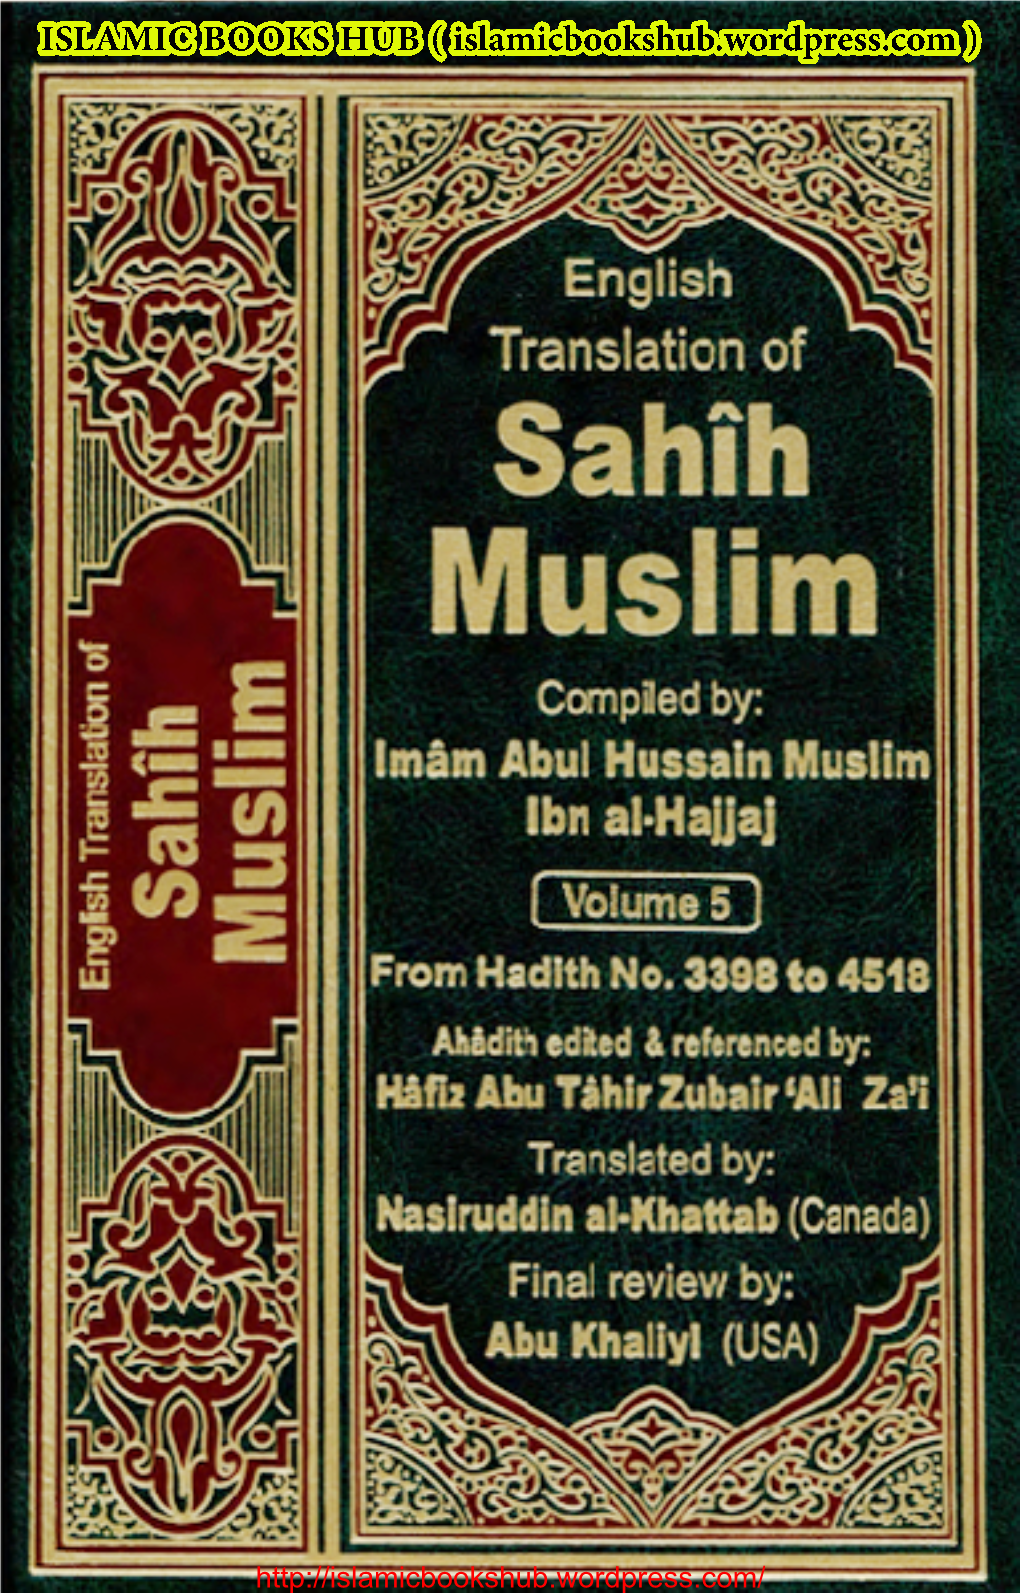 Sahih Muslim Vol. 5